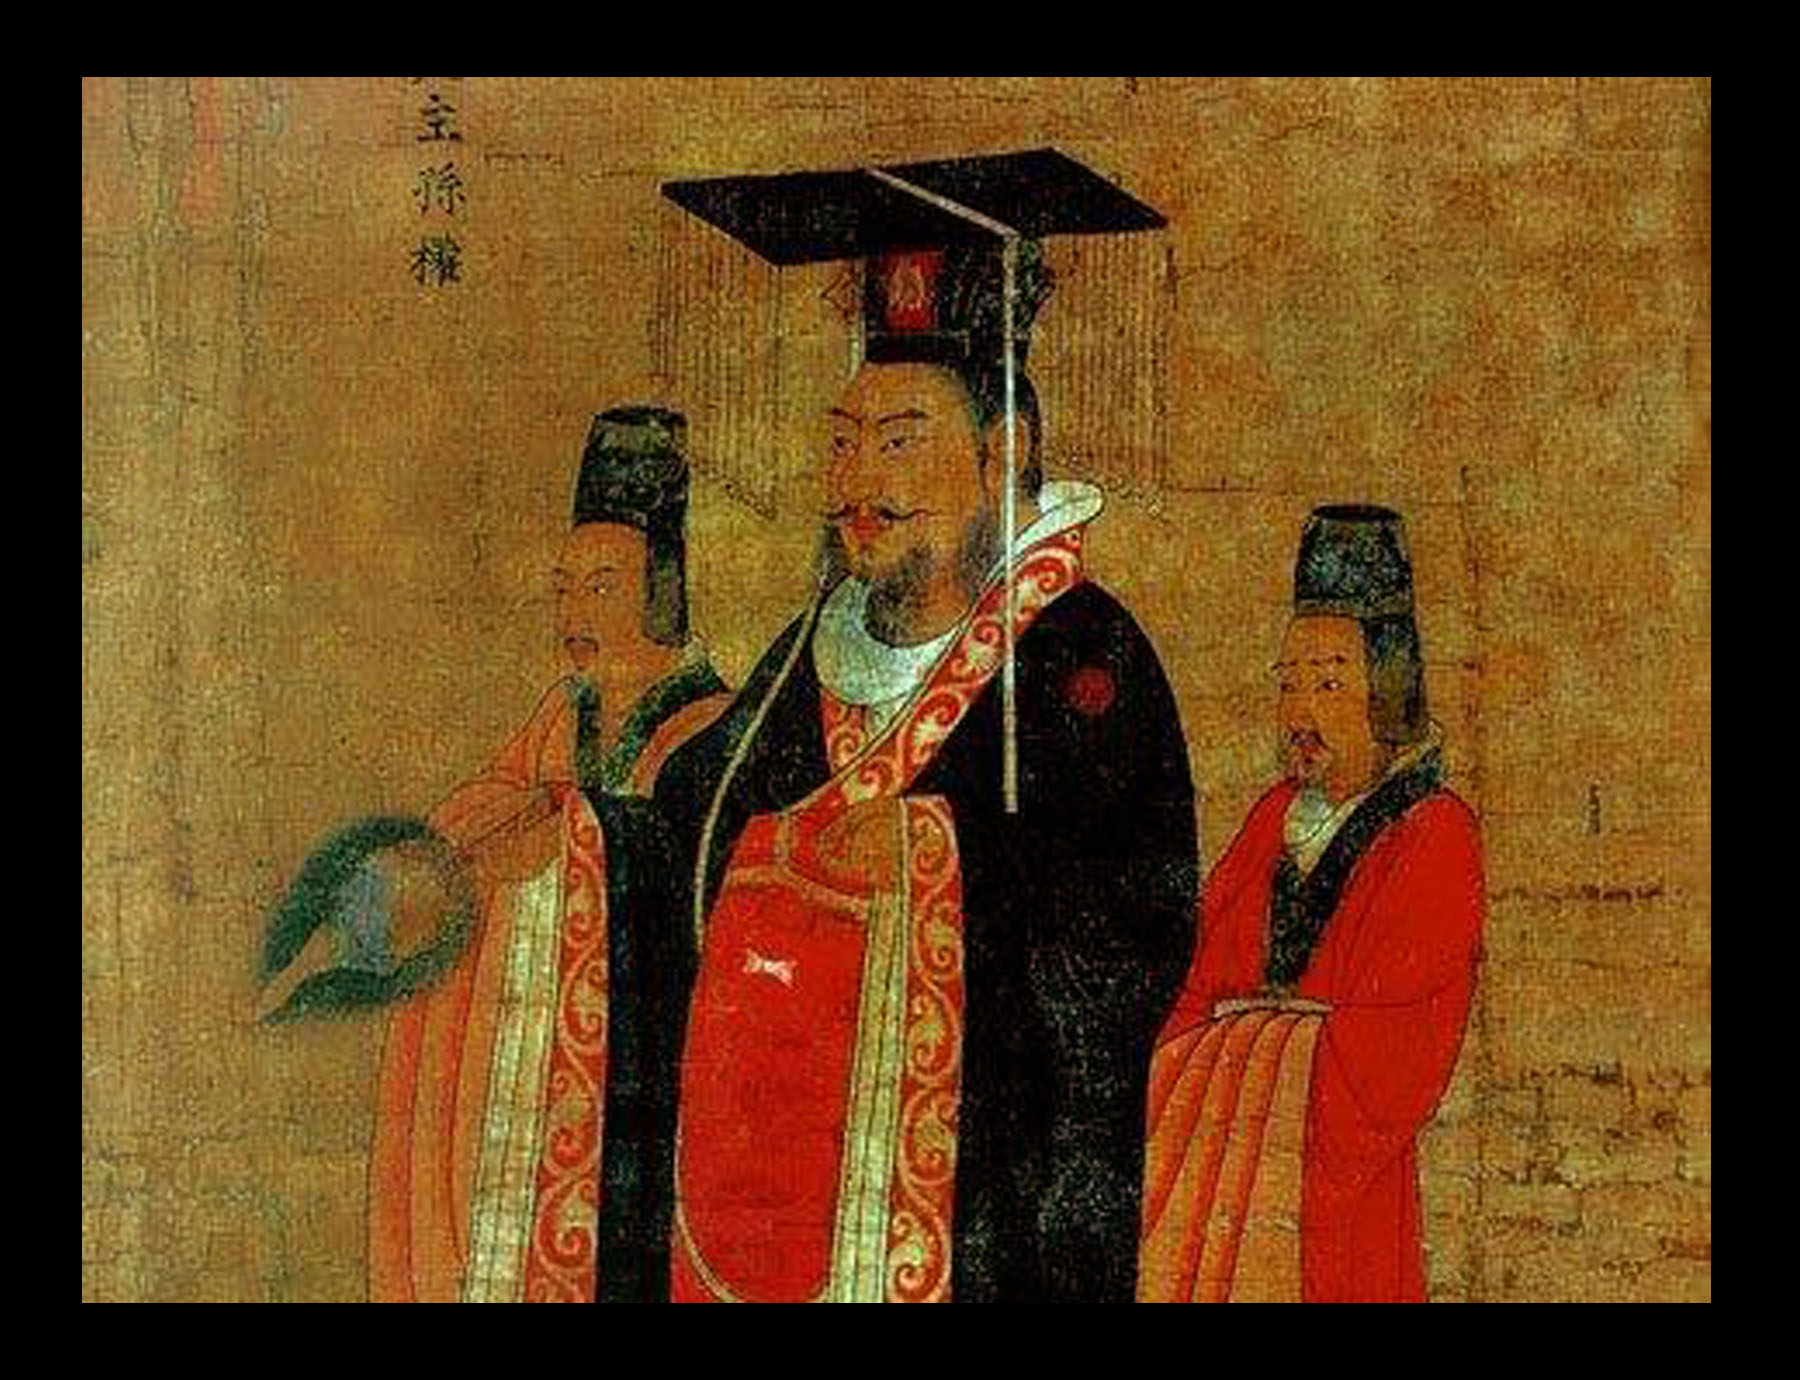 Тан и сун. Династия Тан и Сун в Китае. Гао-Цзун (Династия Сун). Правление династий Тан и Сун в Китае. Династия Сун Чжао Куанъинь.